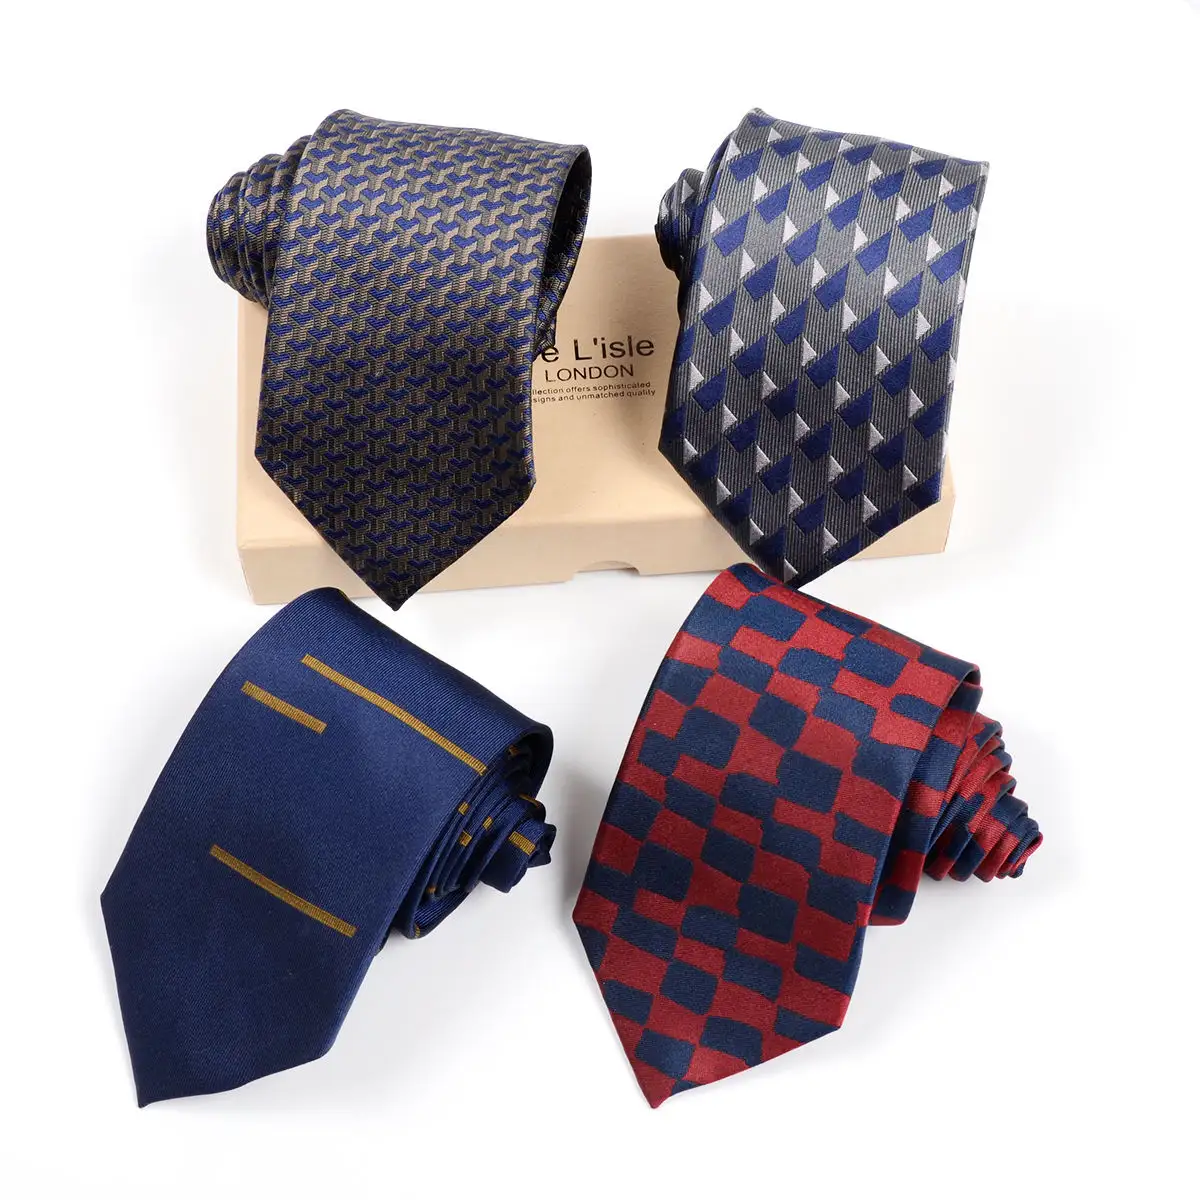 Grosir dasi Tiongkok harga rendah buatan tangan pria Formal bisnis dasi sutra organik dasi anyaman pria